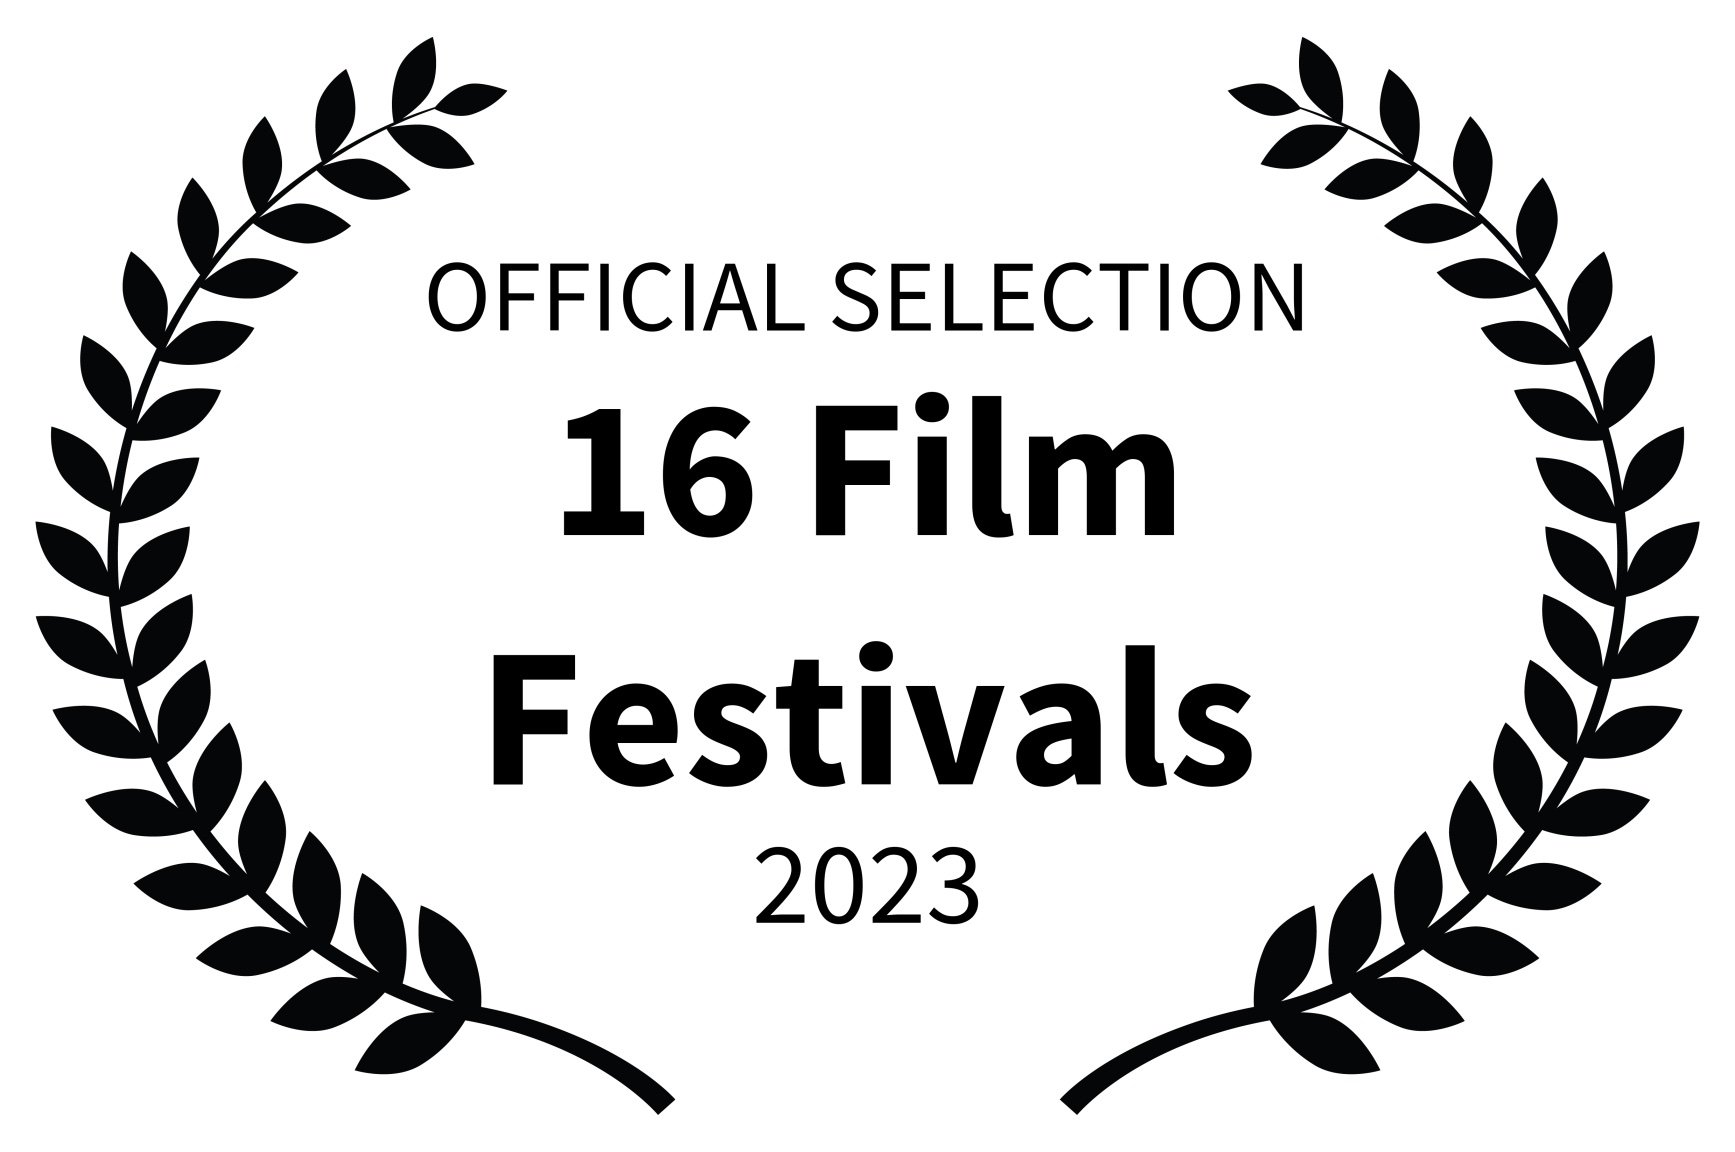 OFFICIAL SELECTION - 16 Film Festivals - 2023-2.jpg